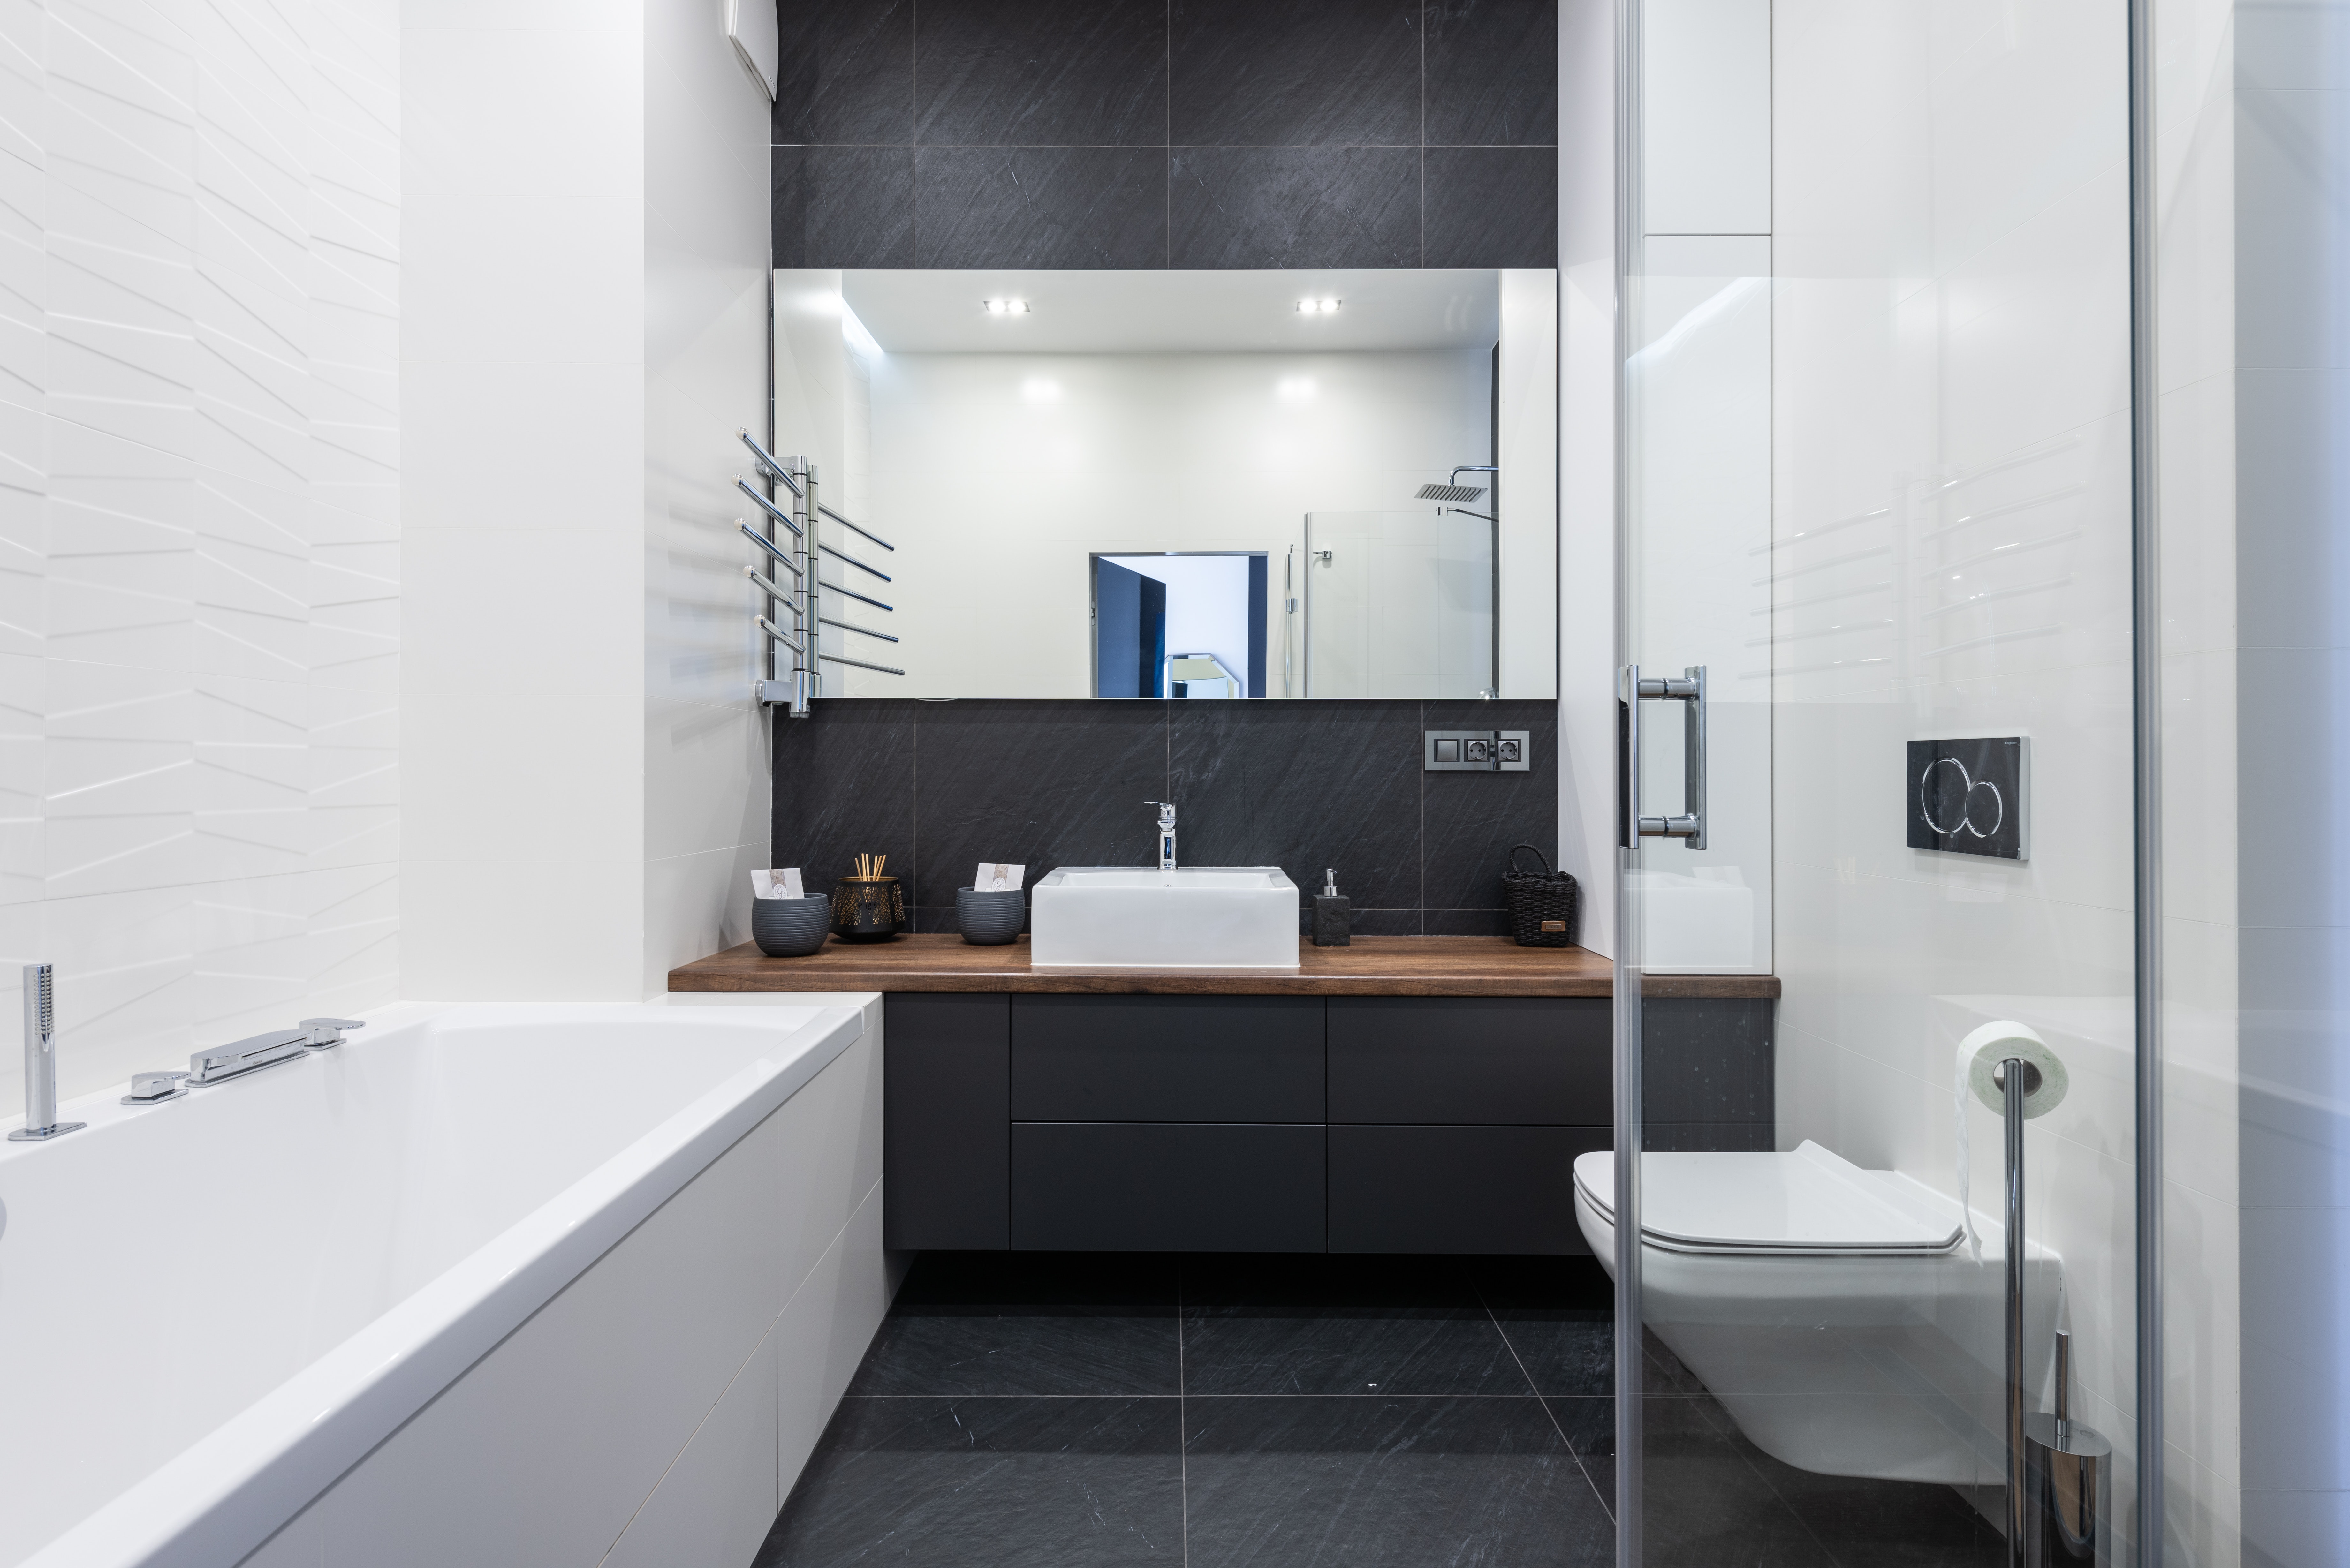 Прямоугольное зеркало эффектно смотрится в черно-белой гамме ванной комнаты, визуально делает пространство шире.